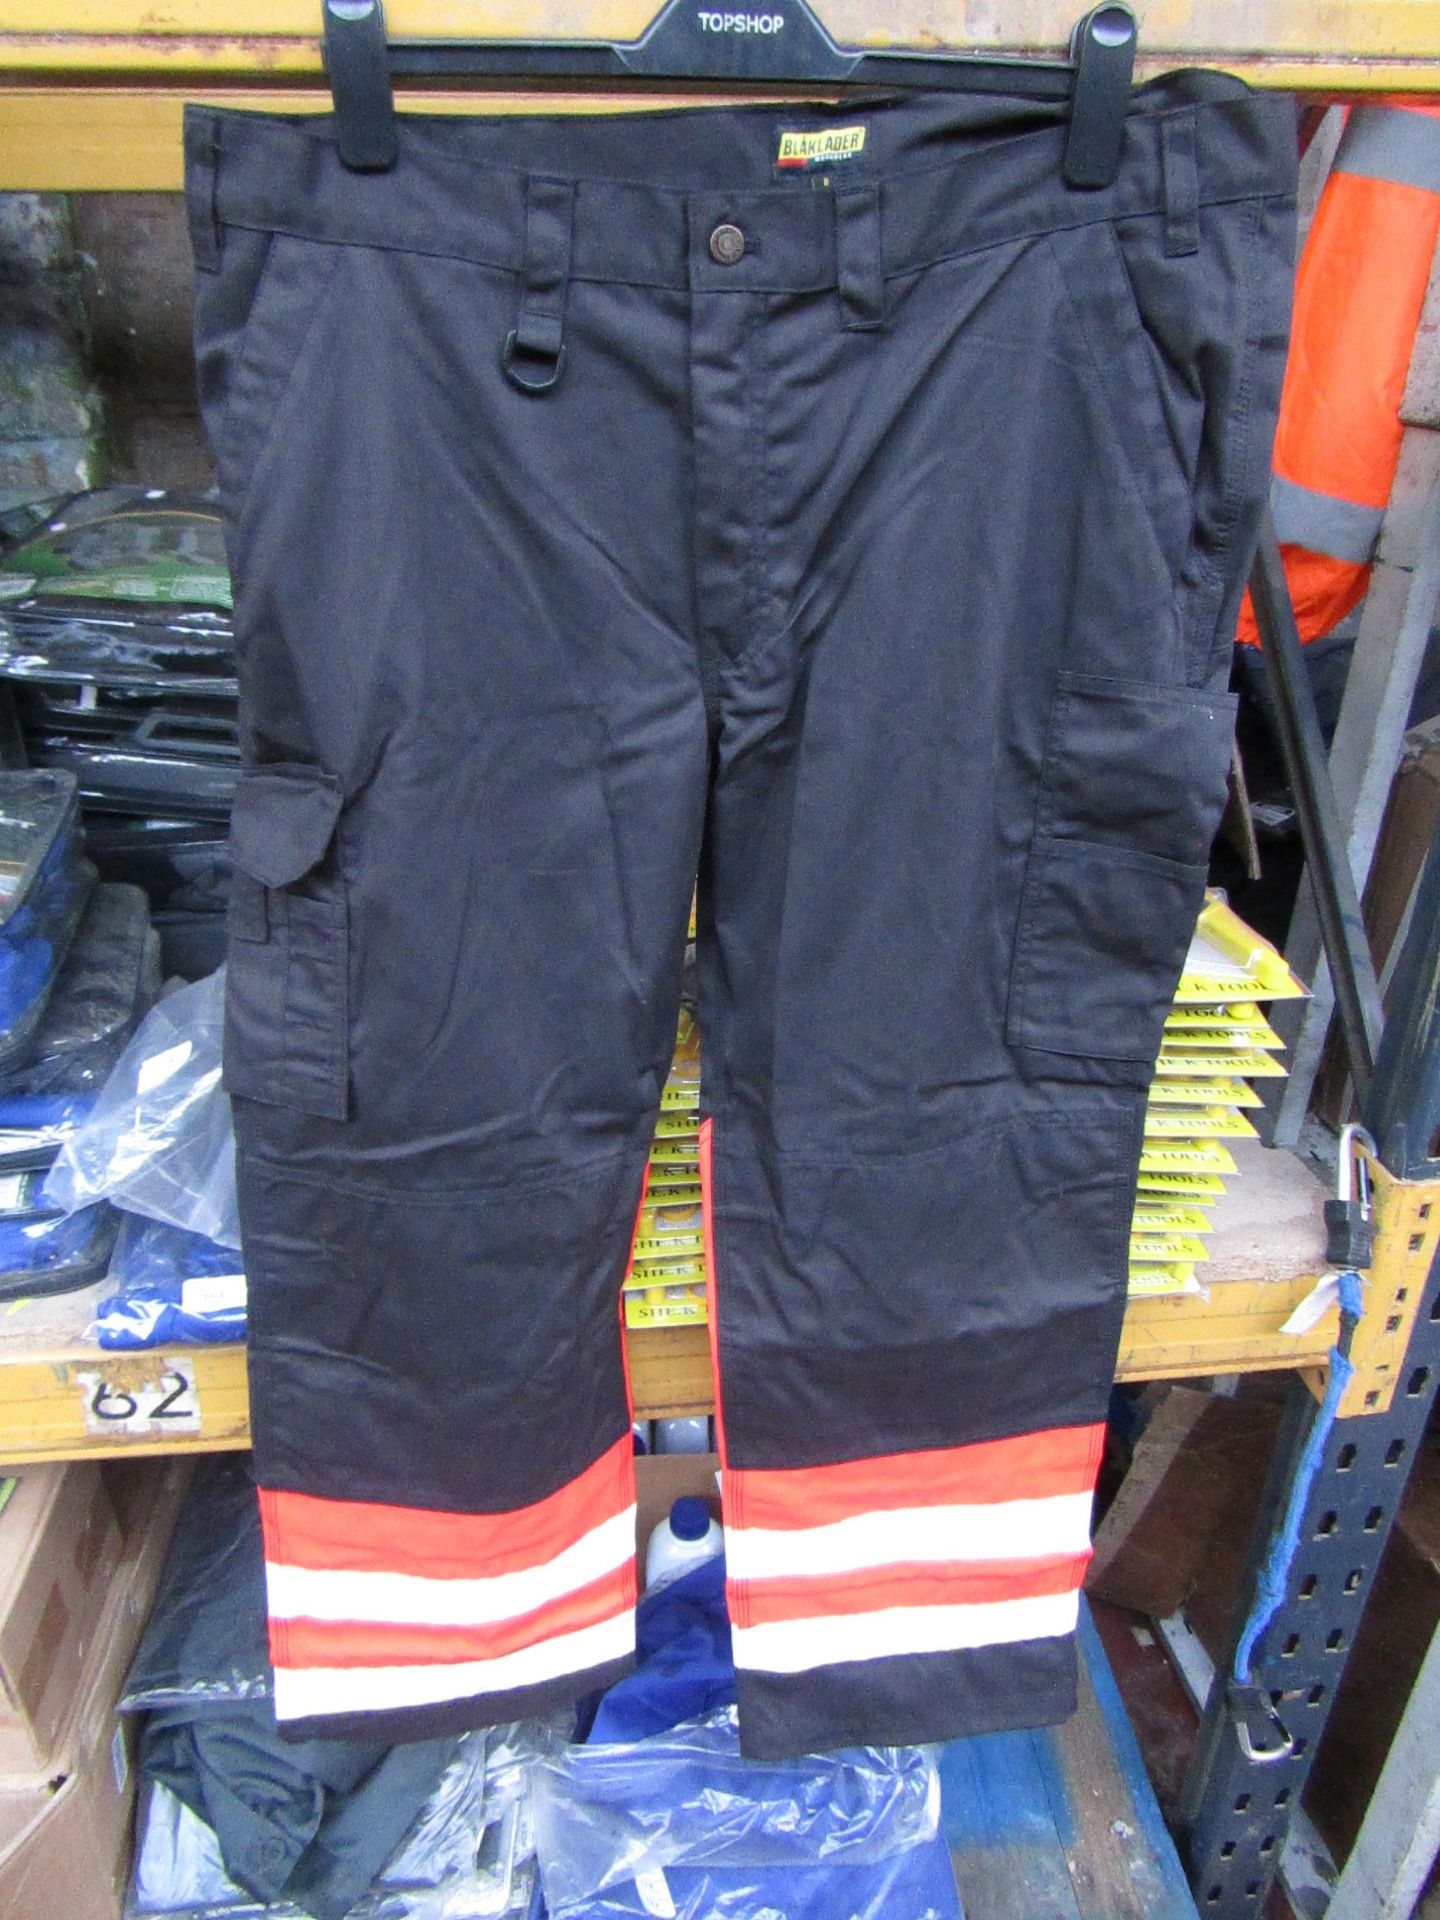 Blaklader - Black Hi-Vis Work Trousers - Size 43 small - Unused & Packaged.